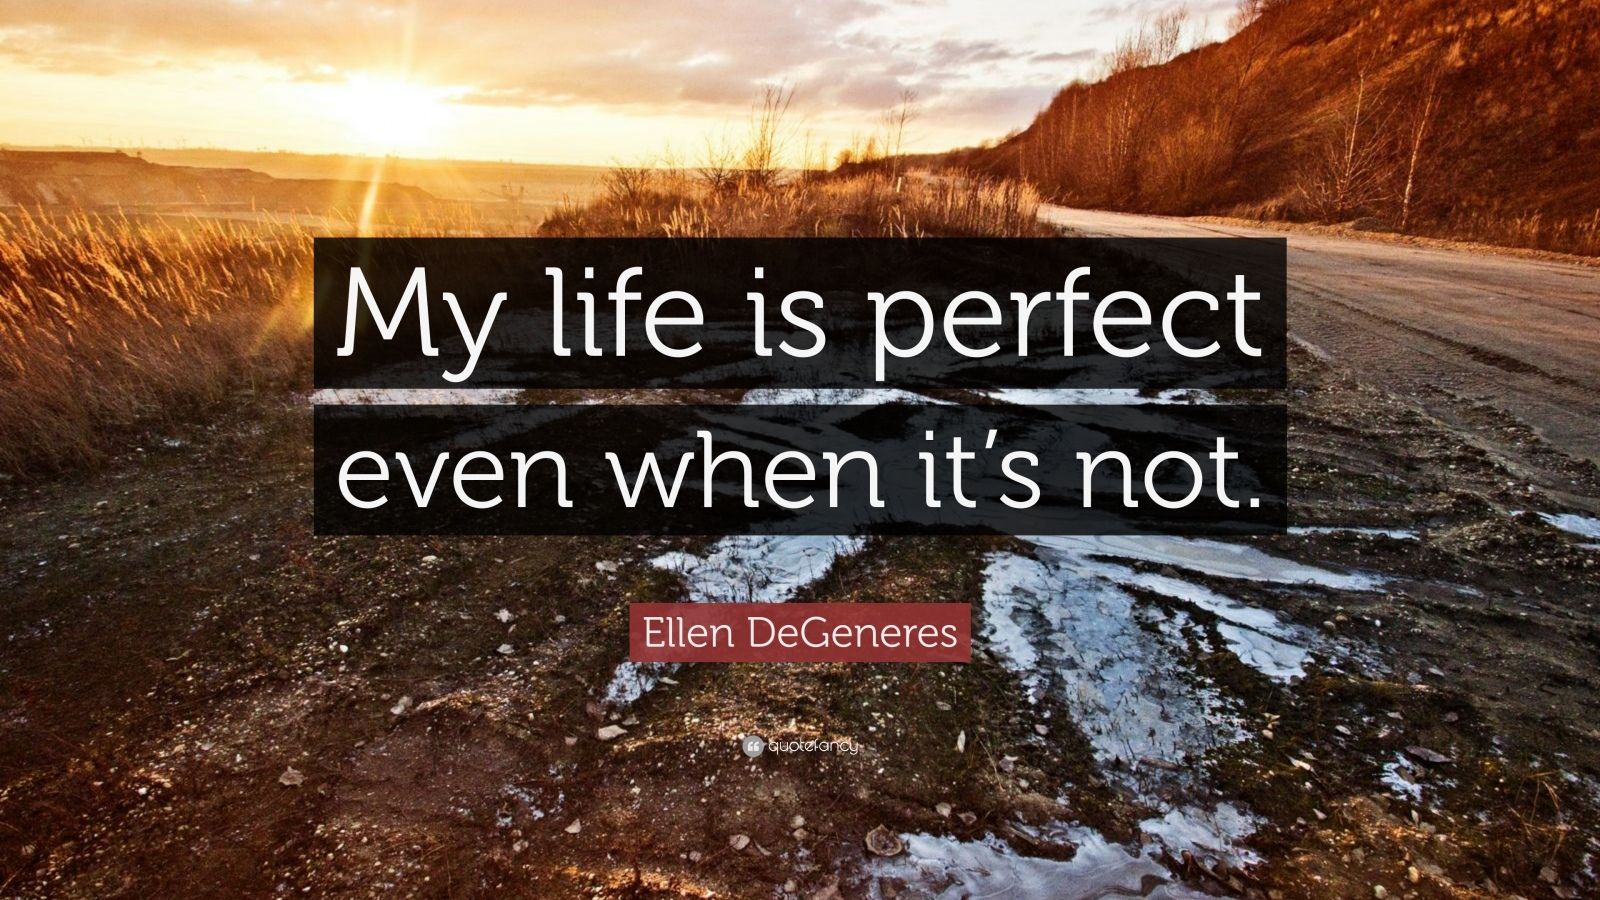 Ellen DeGeneres Quote: “My life is perfect even when it’s not.” (12 ...